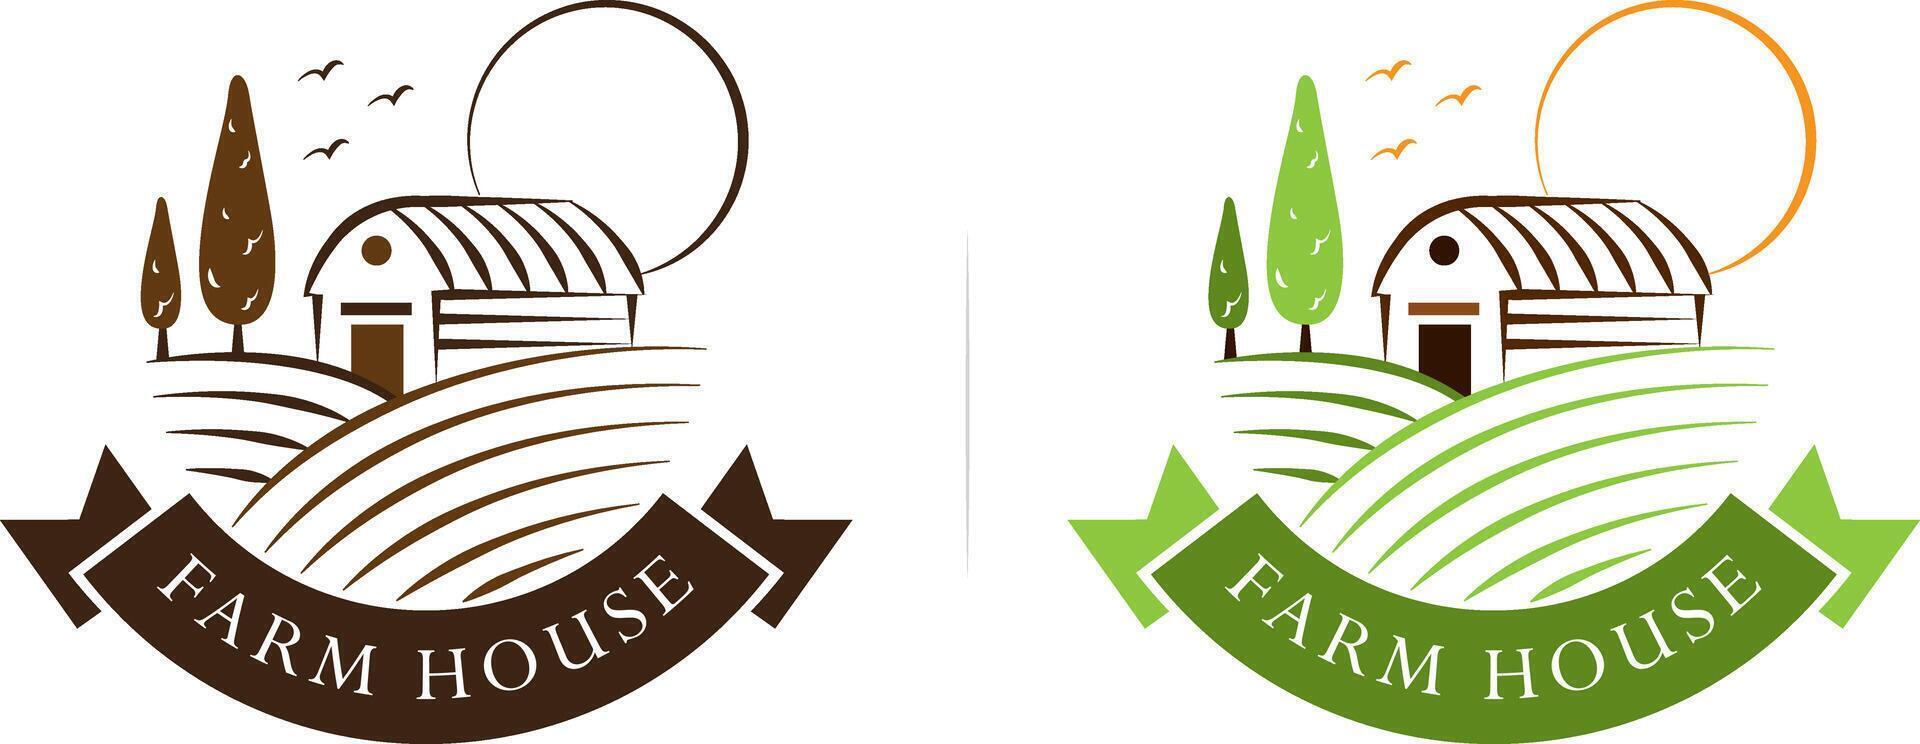 boerderij huis logo in gegraveerde stijl vector illustratie